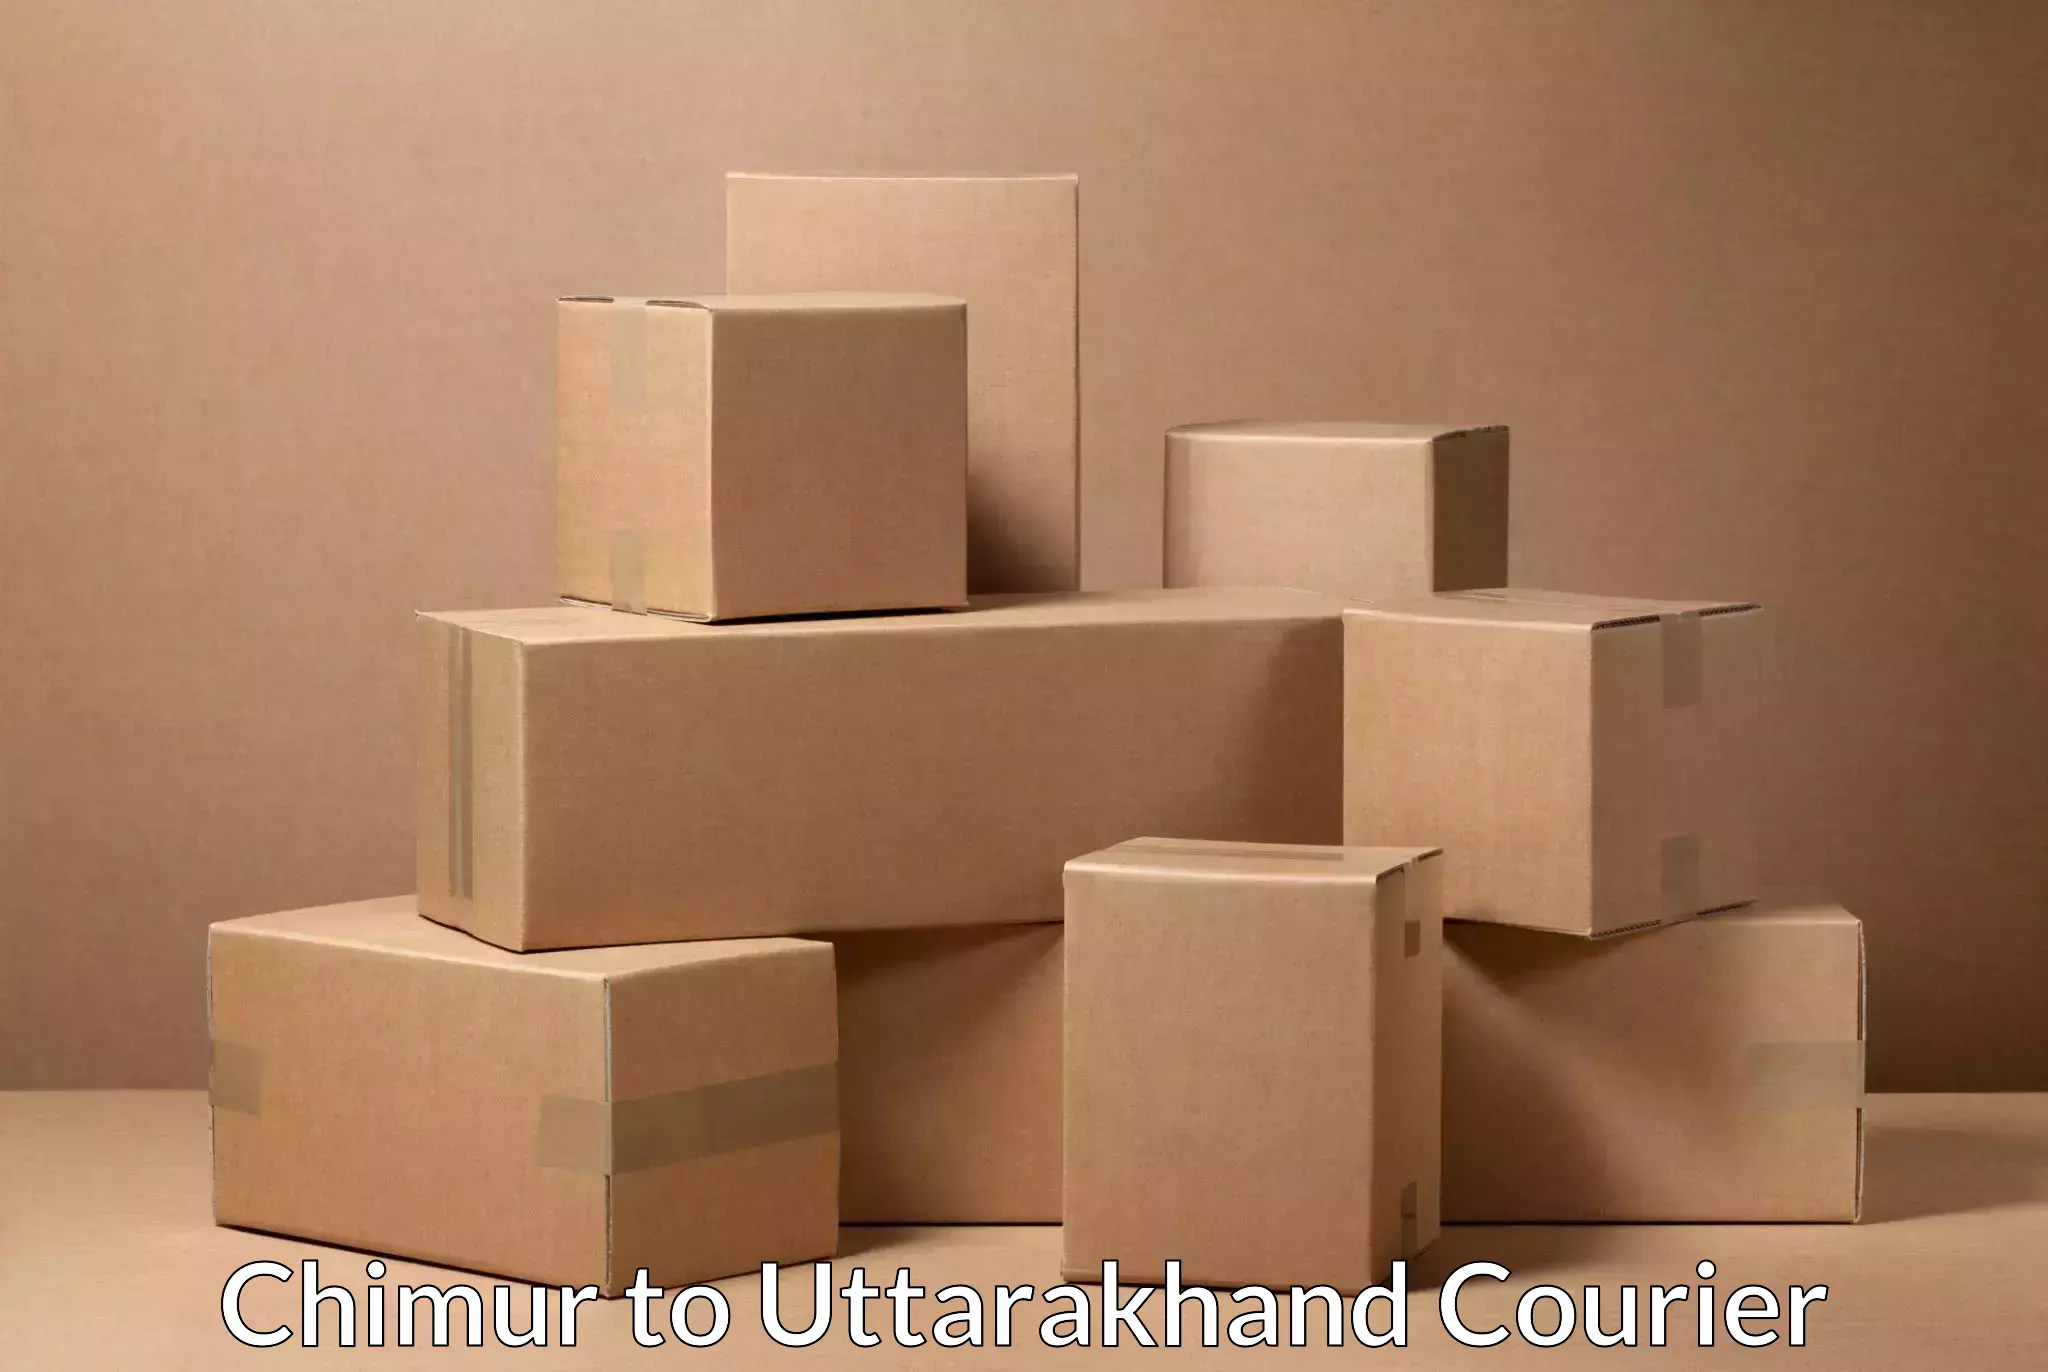 Efficient parcel service Chimur to Almora